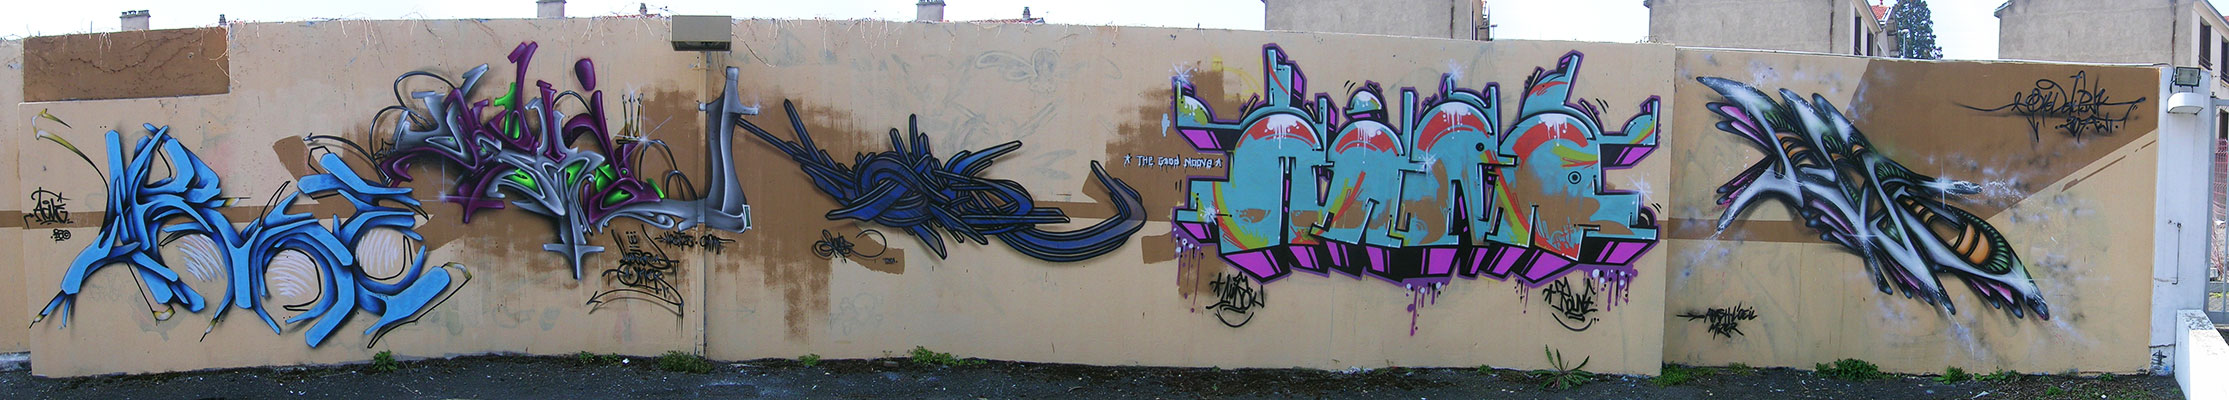 tkn_h2o_graffiti